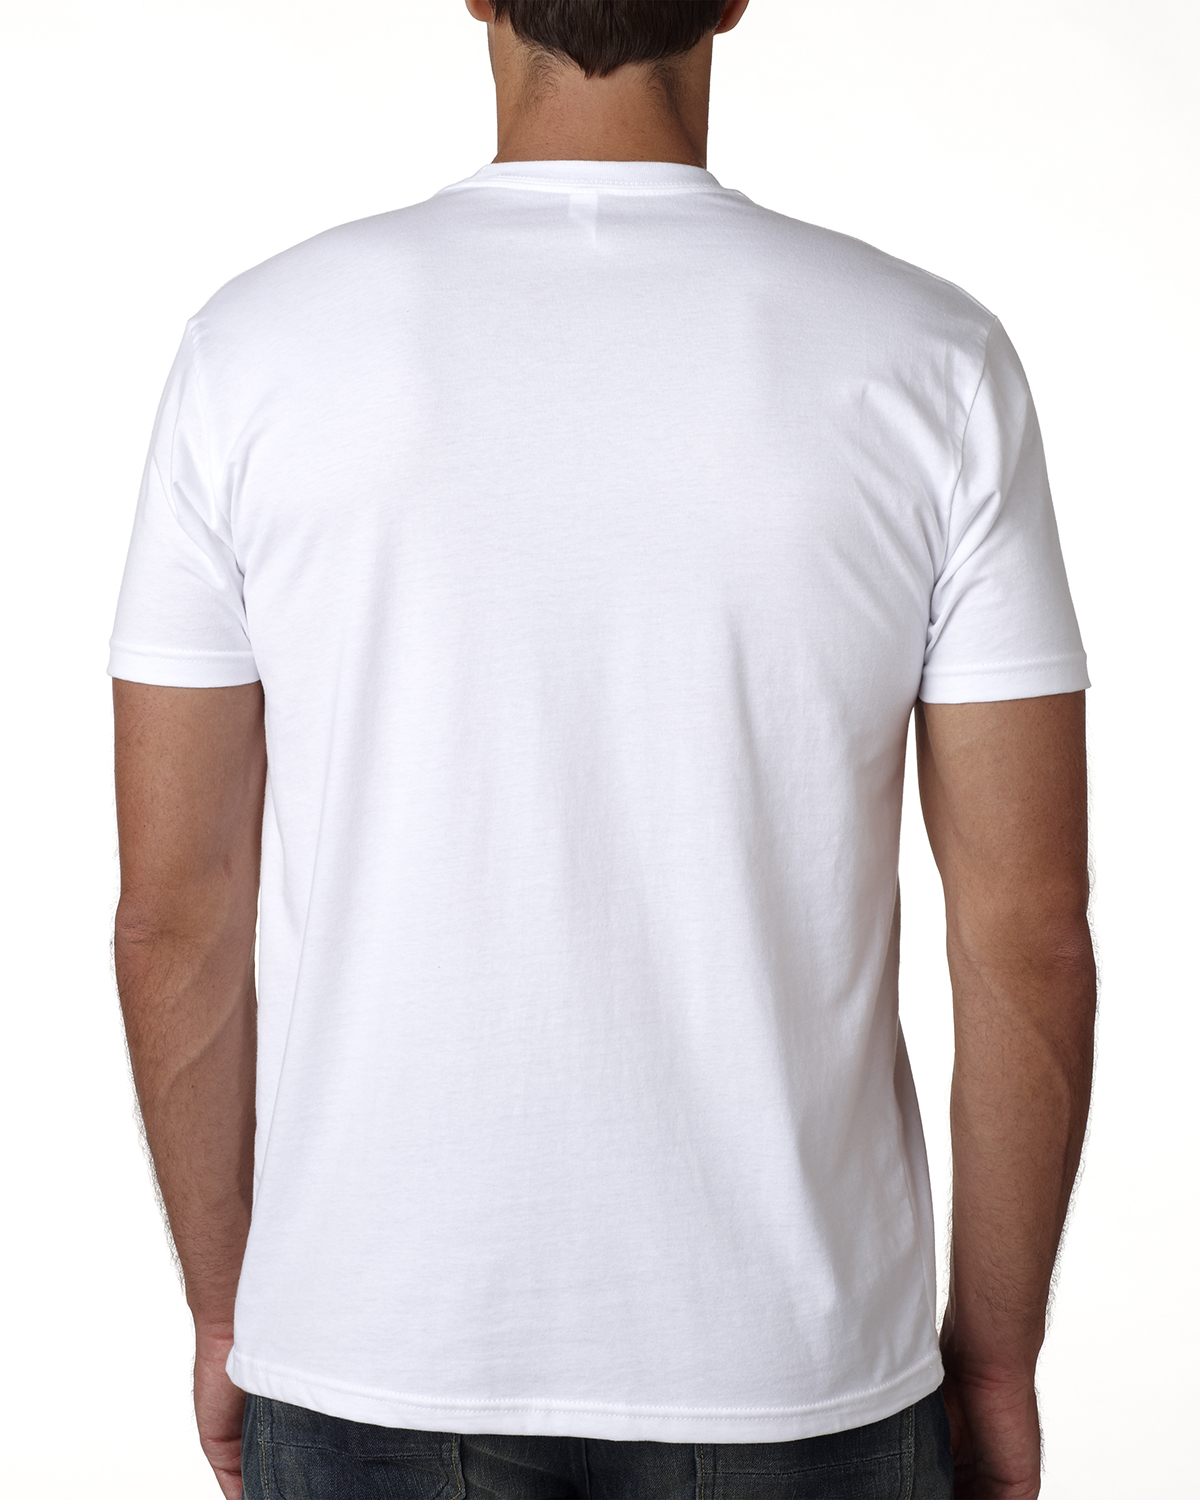 Next Level Unisex Cotton T-Shirt — ZEIDEL & co.